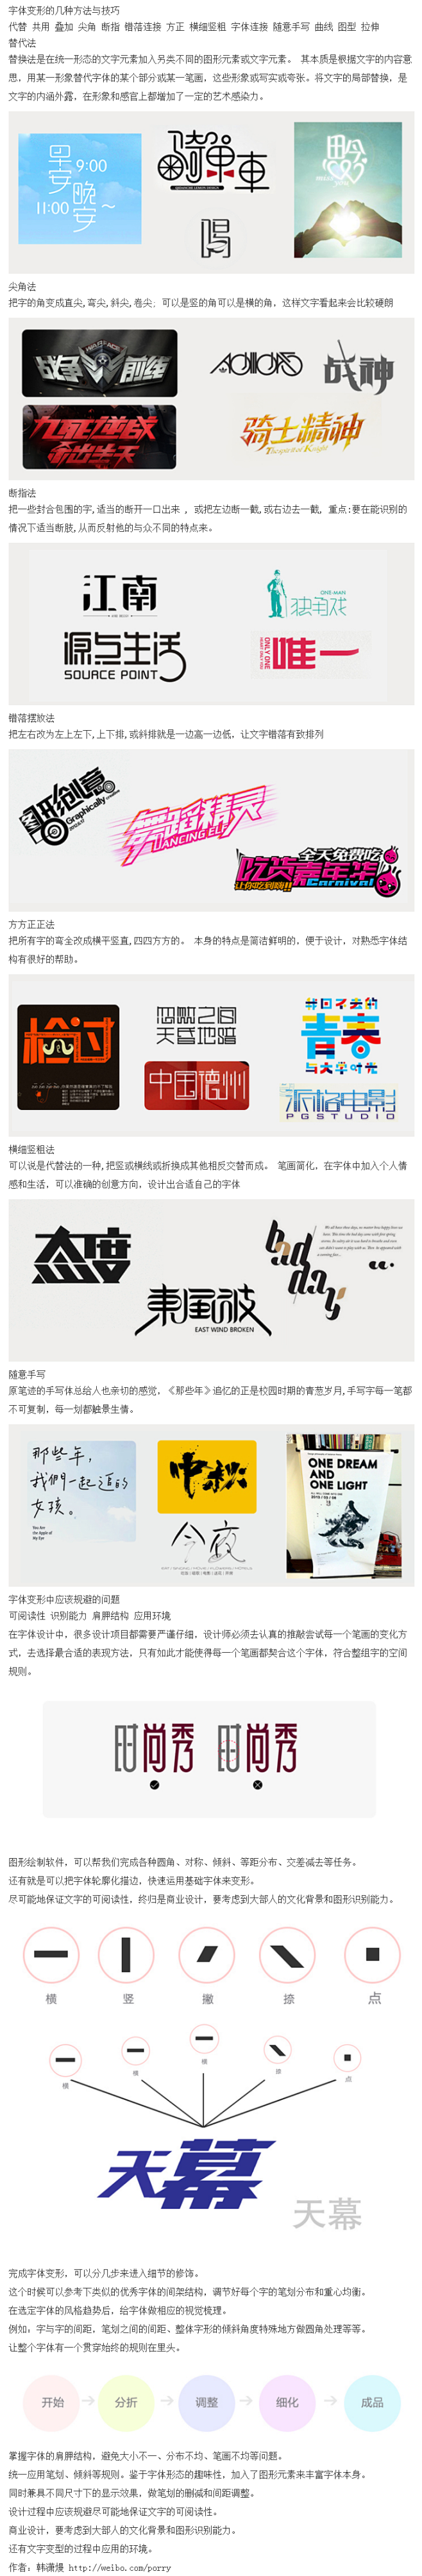 汉字创意 字体图形化设计